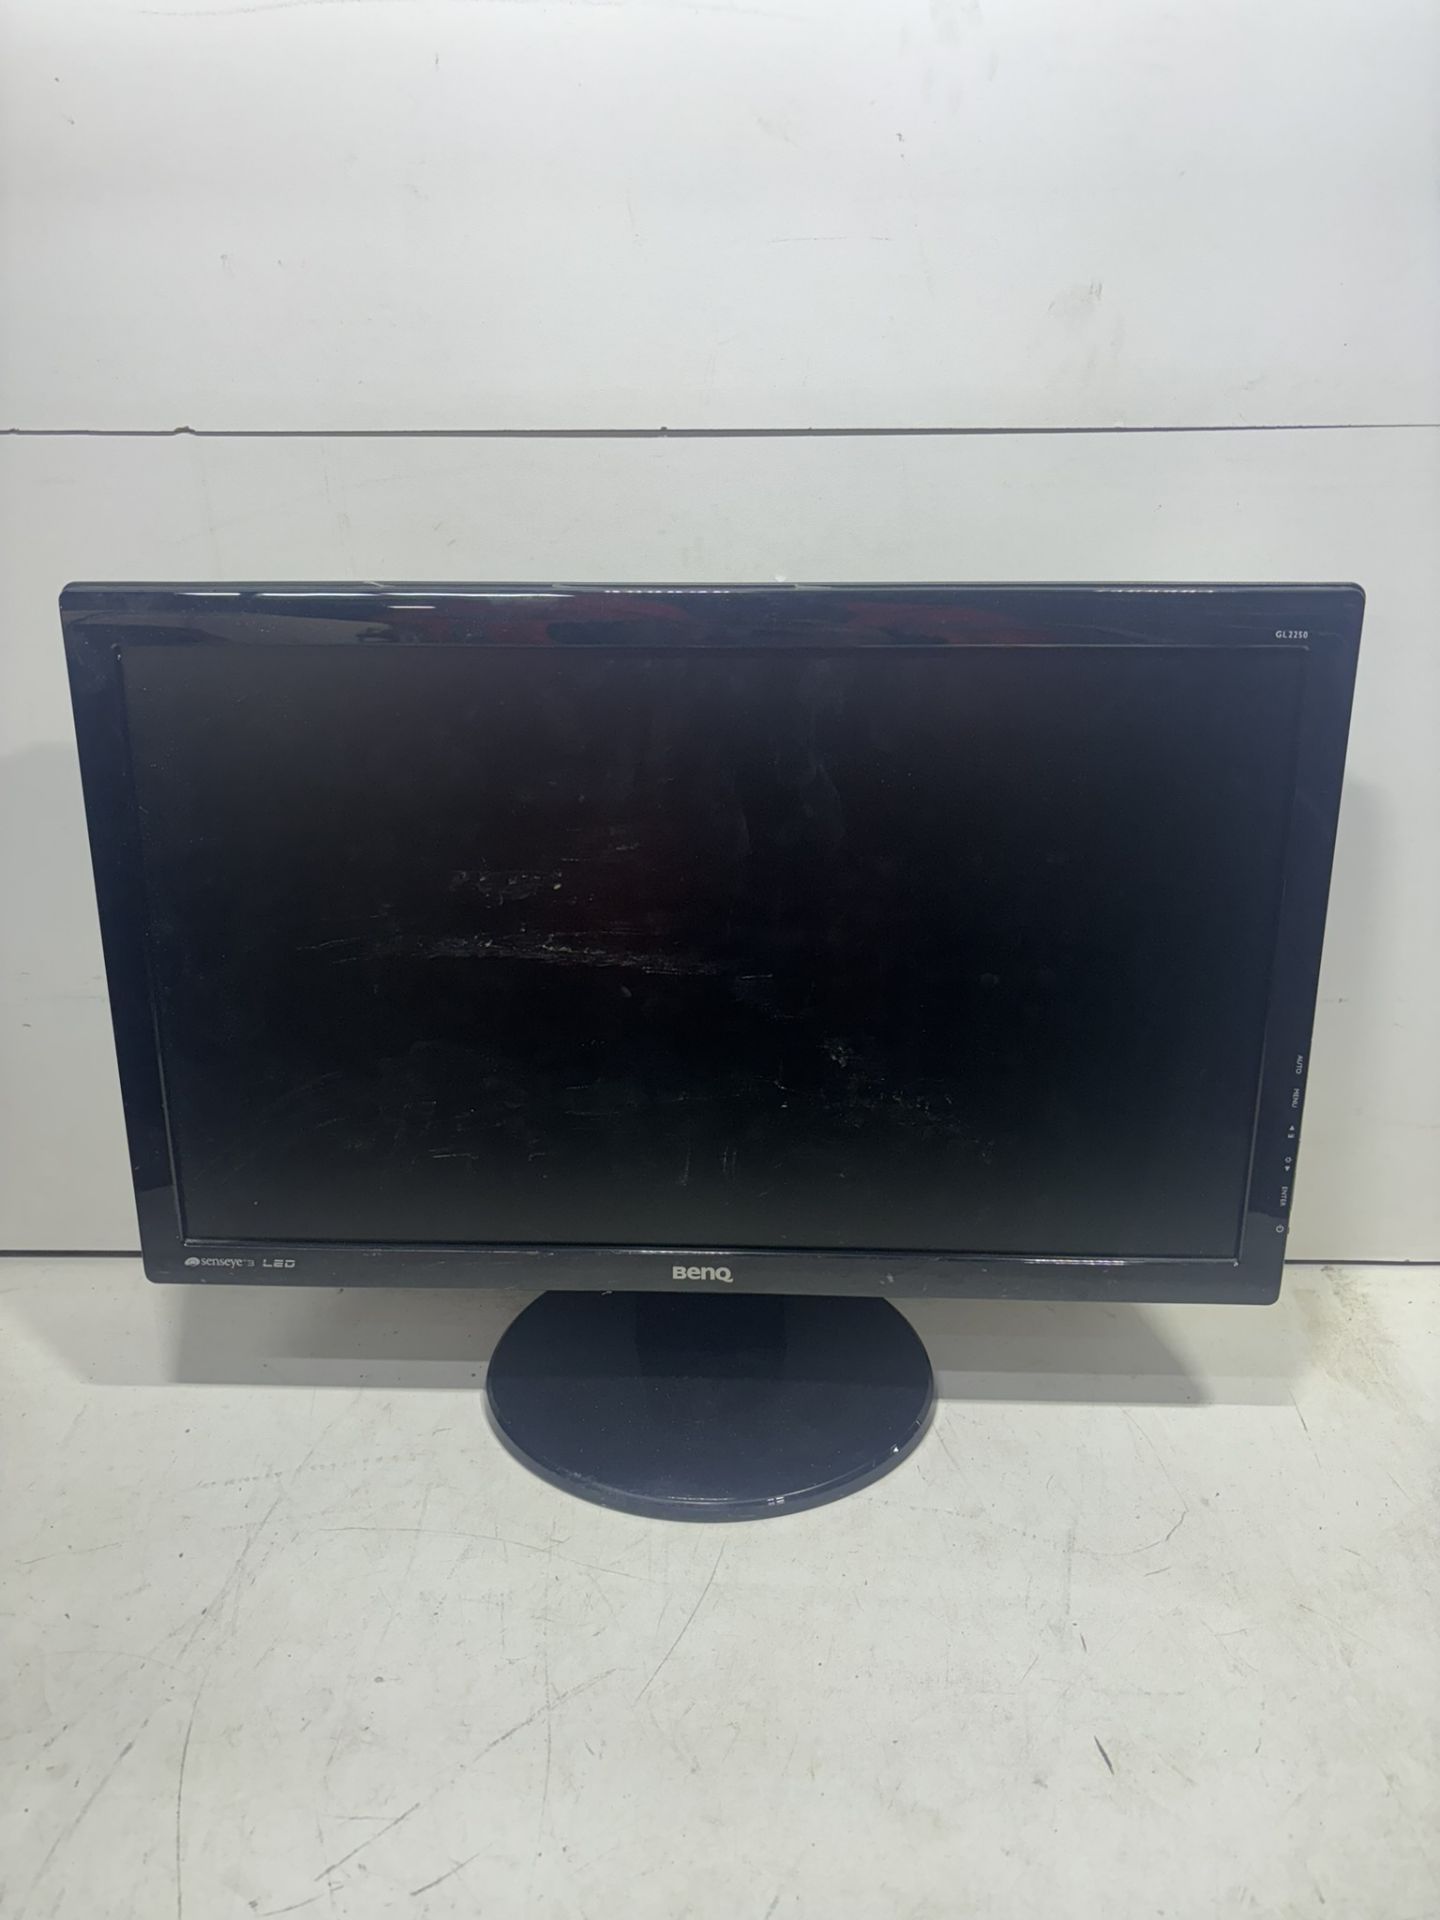 2 x BenQ GL2250 21.5 inch LCD Monitors - Image 7 of 8